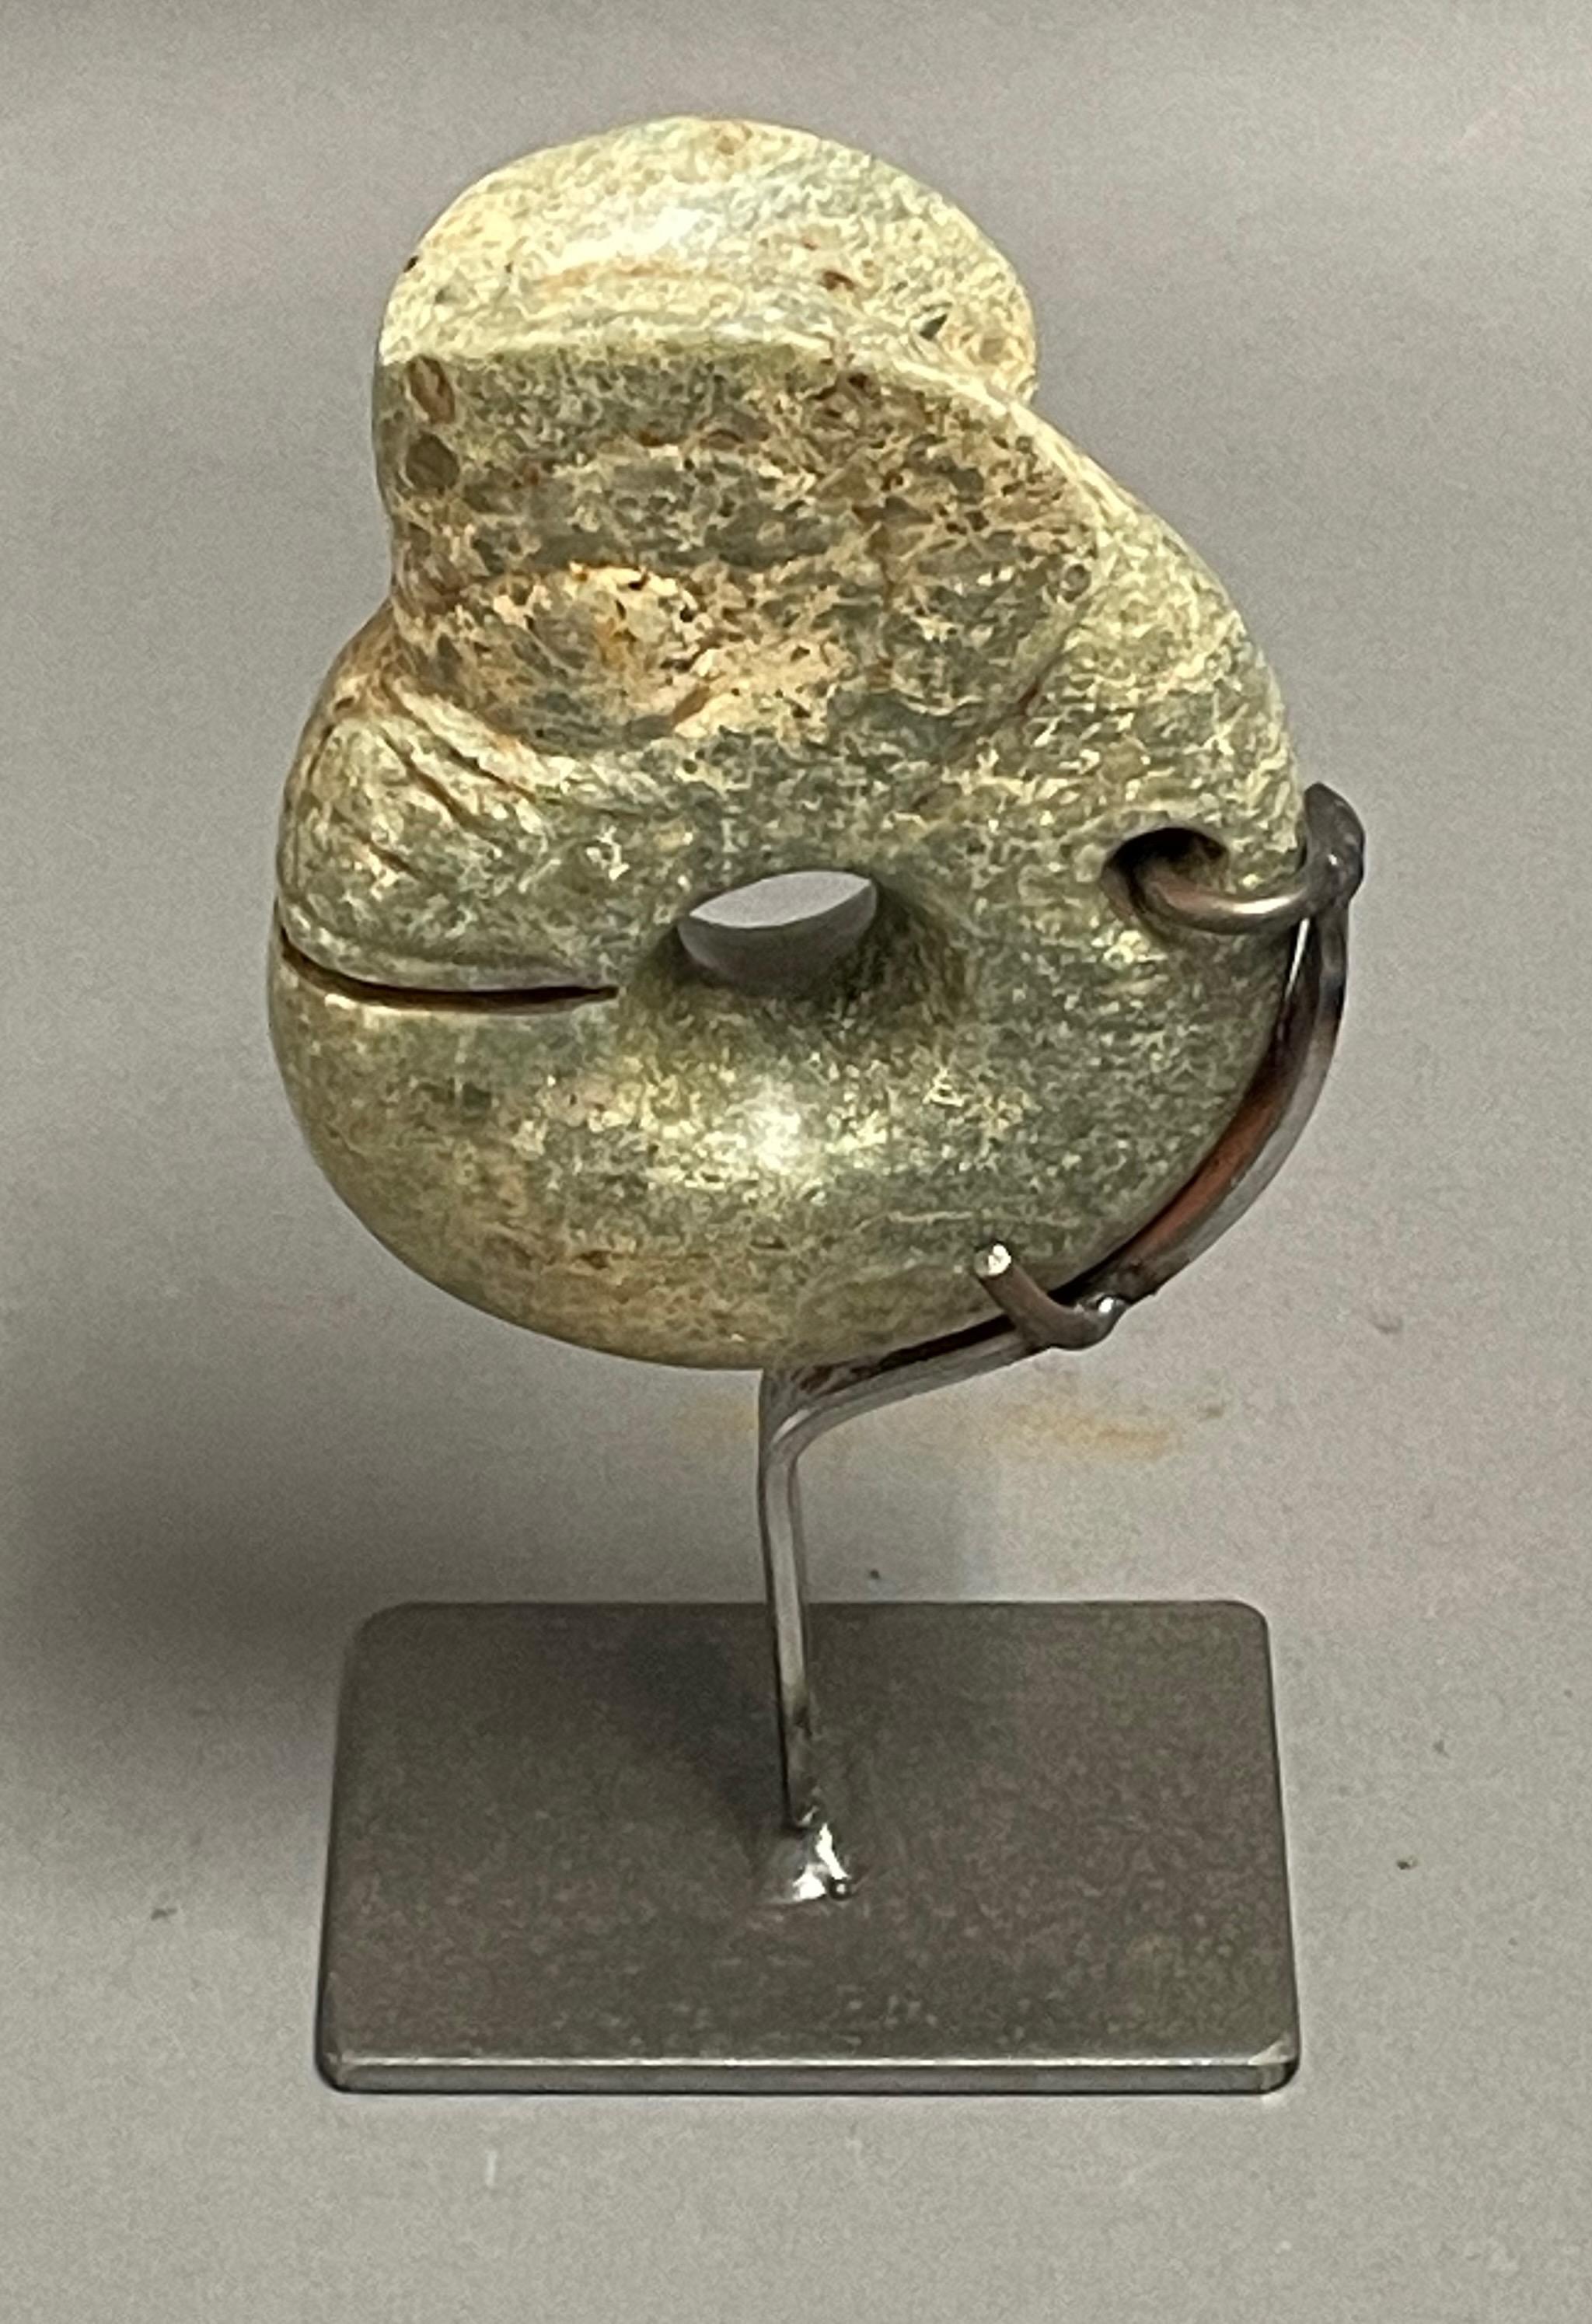 Zeitgenössische chinesische handgeschnitzte Steinskulptur einer Garnele.
Sitzt schön mit Satz von zwei jadefarbenen Steinscheiben  S6775
Standmaße  3